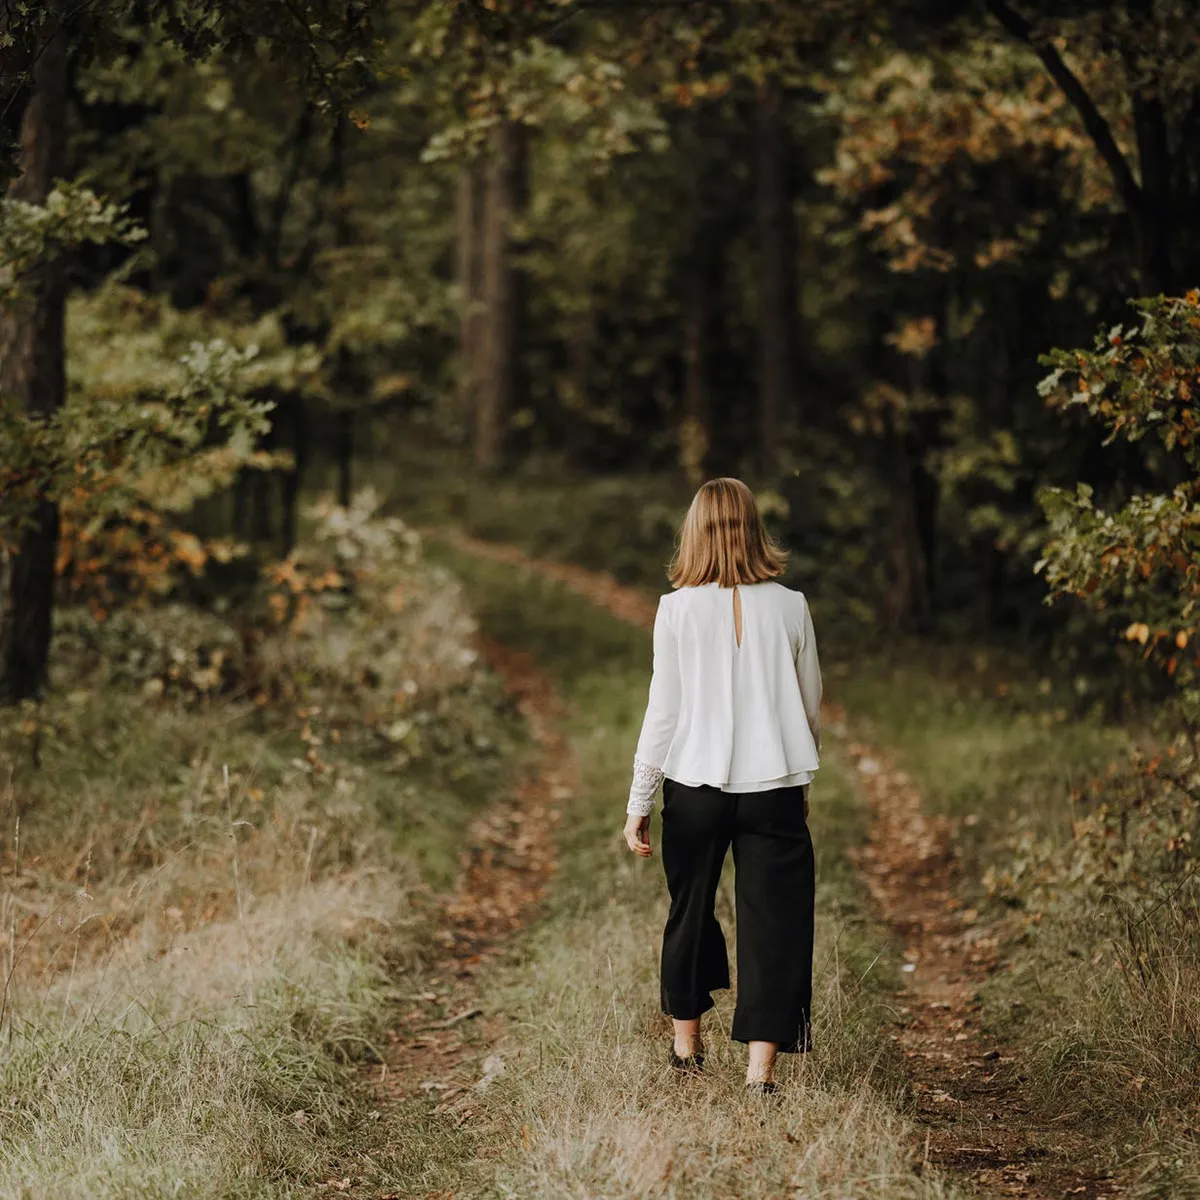 Leonie Ritschel geht einen Weg in den Wald